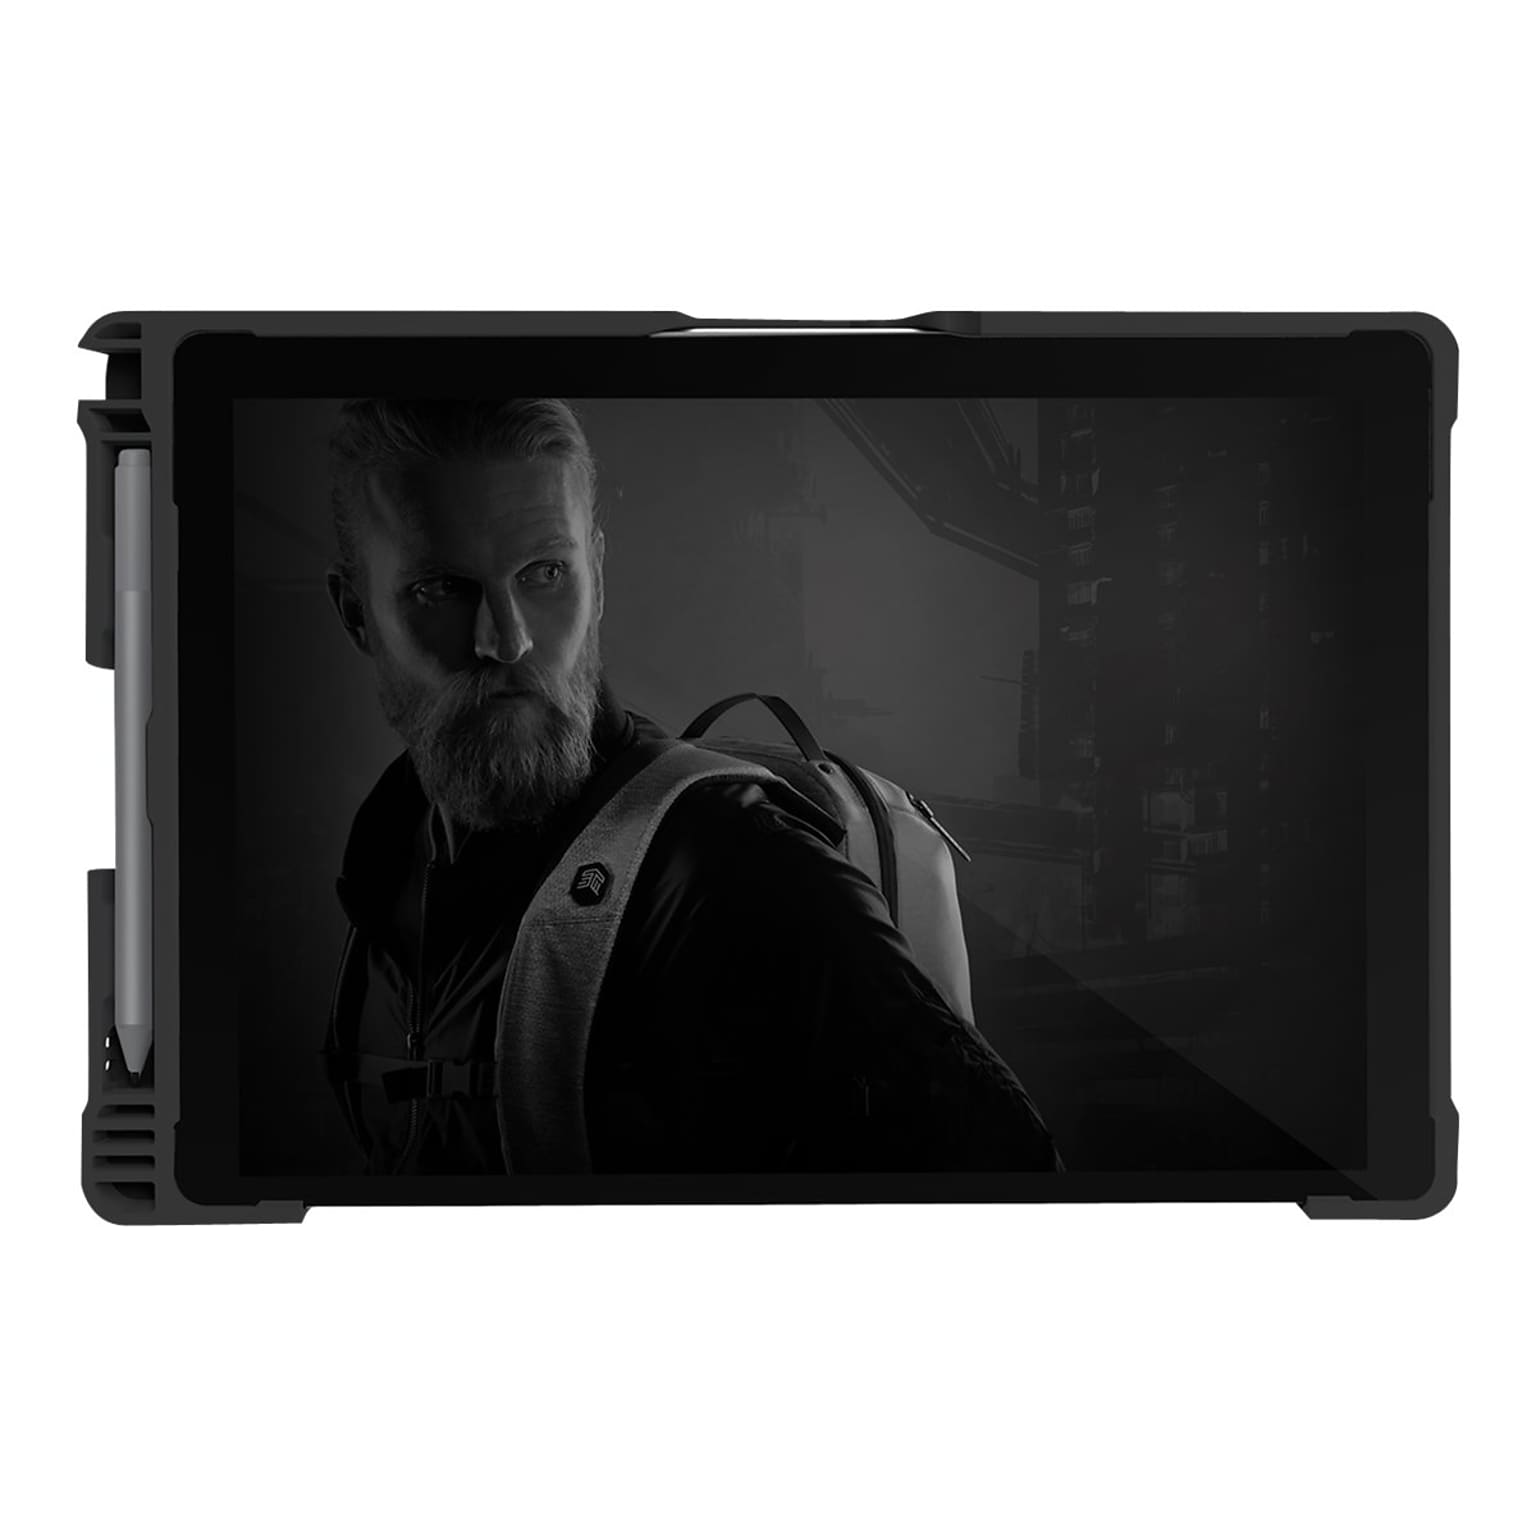 STM dux STM-222-260L-01 Polycarbonate Cover for Microsoft Surface Pro, 2.6H x 8.23W x 0.83D, Black/Transparent